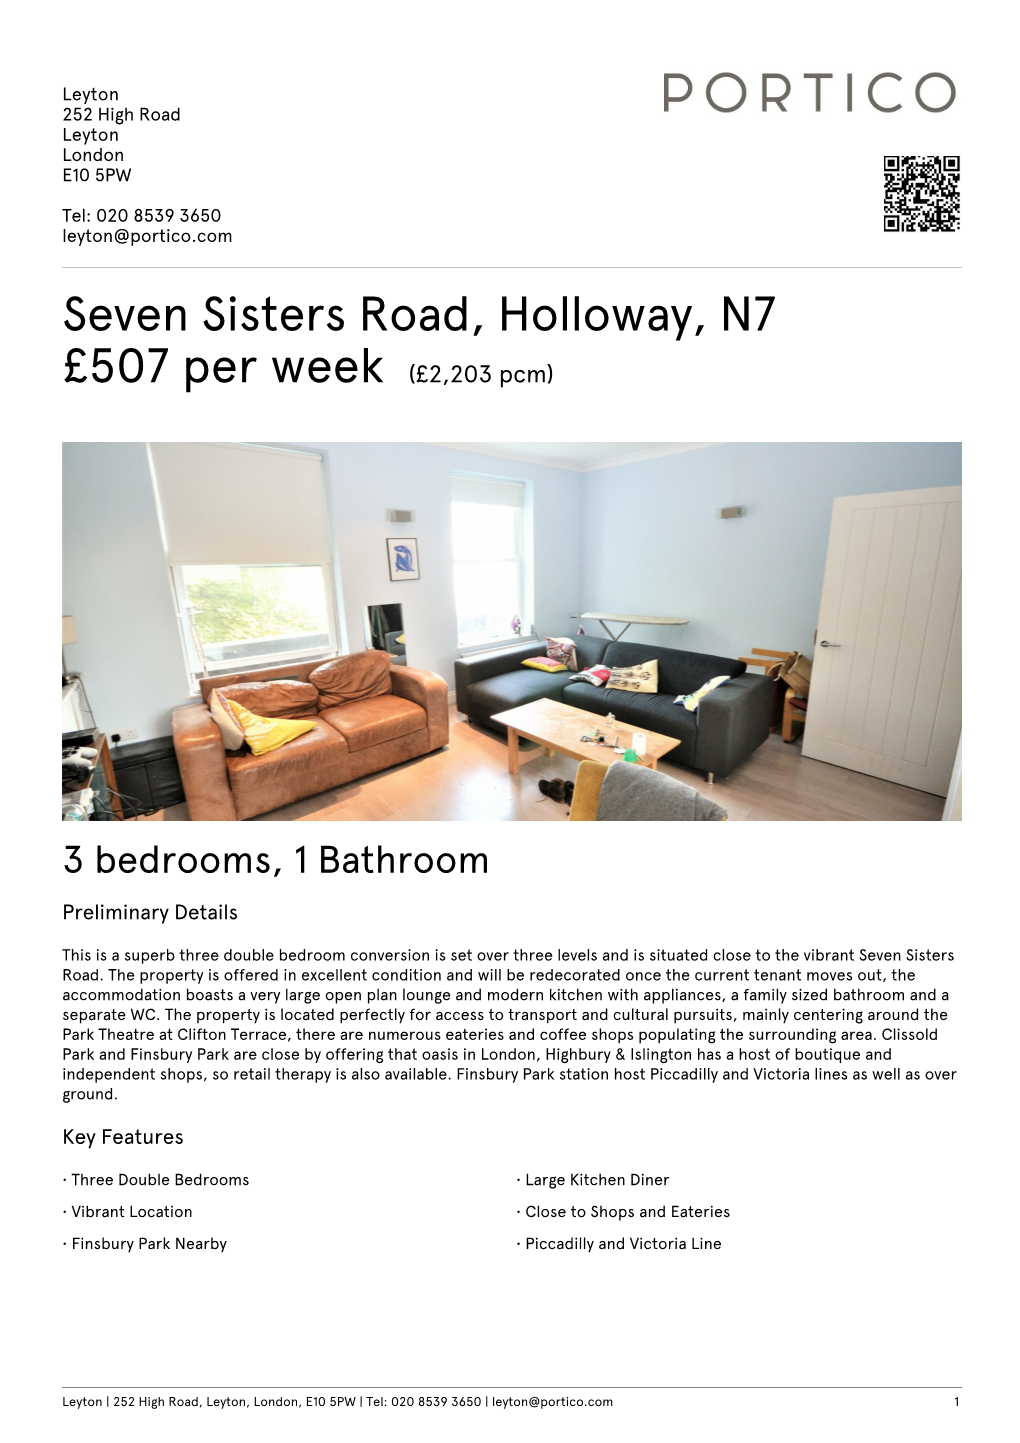 Seven Sisters Road, Holloway, N7 £450 Per Week